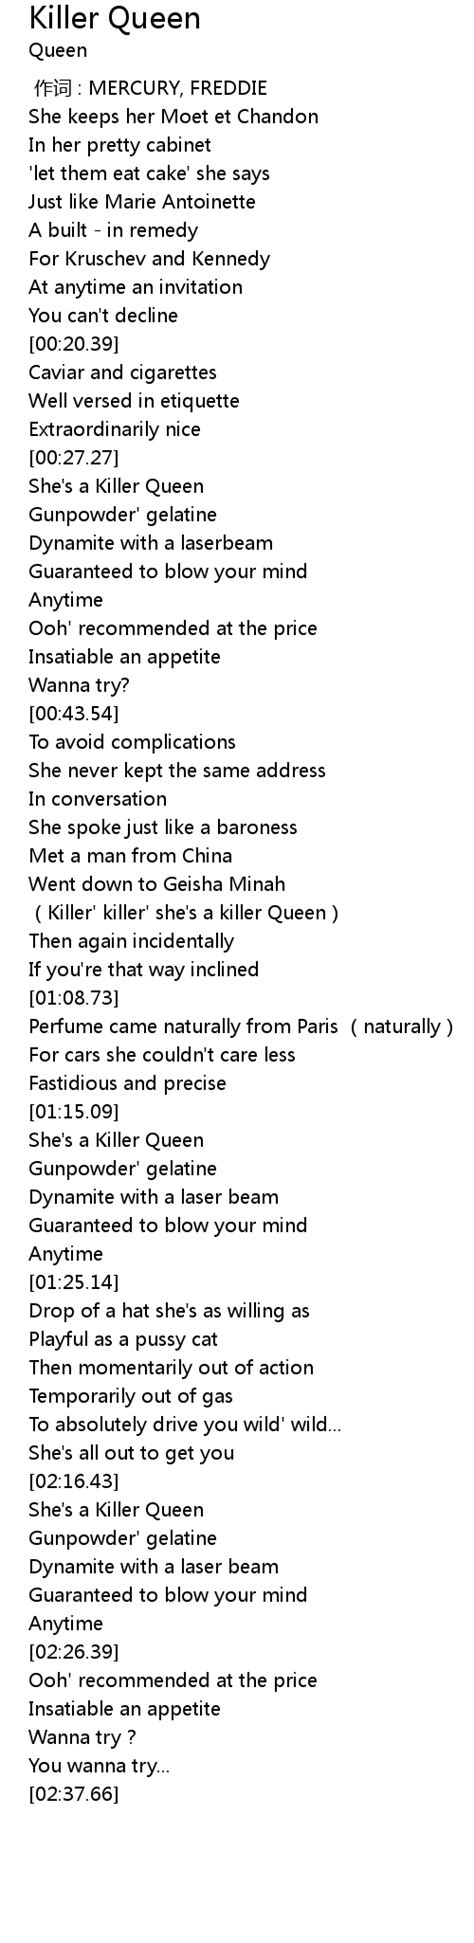 Killer Queen Lyrics - Follow Lyrics